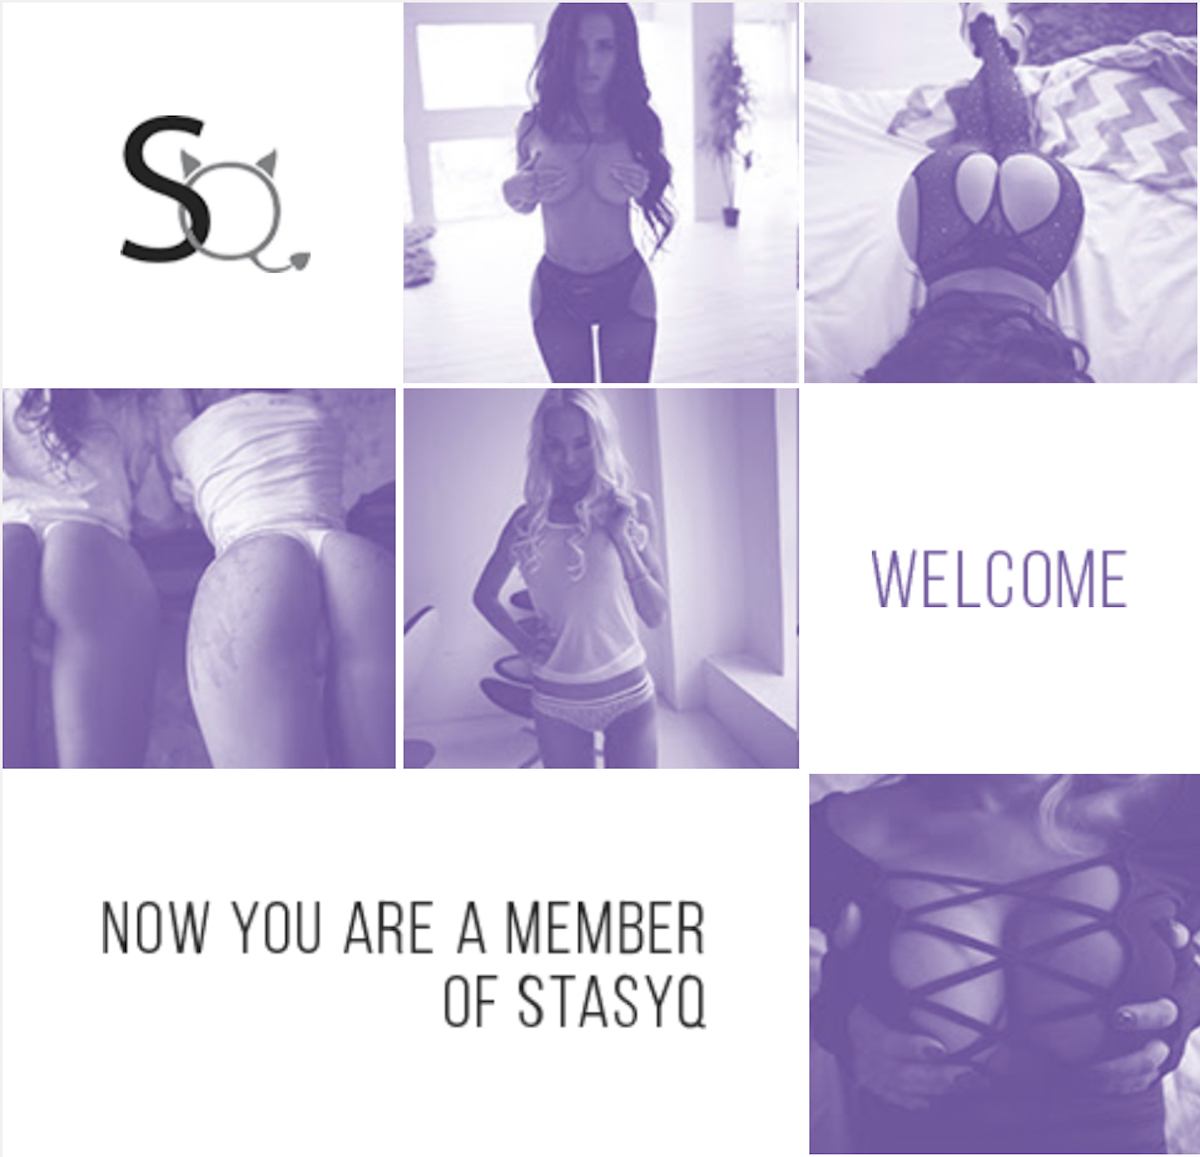 stasyq membership review